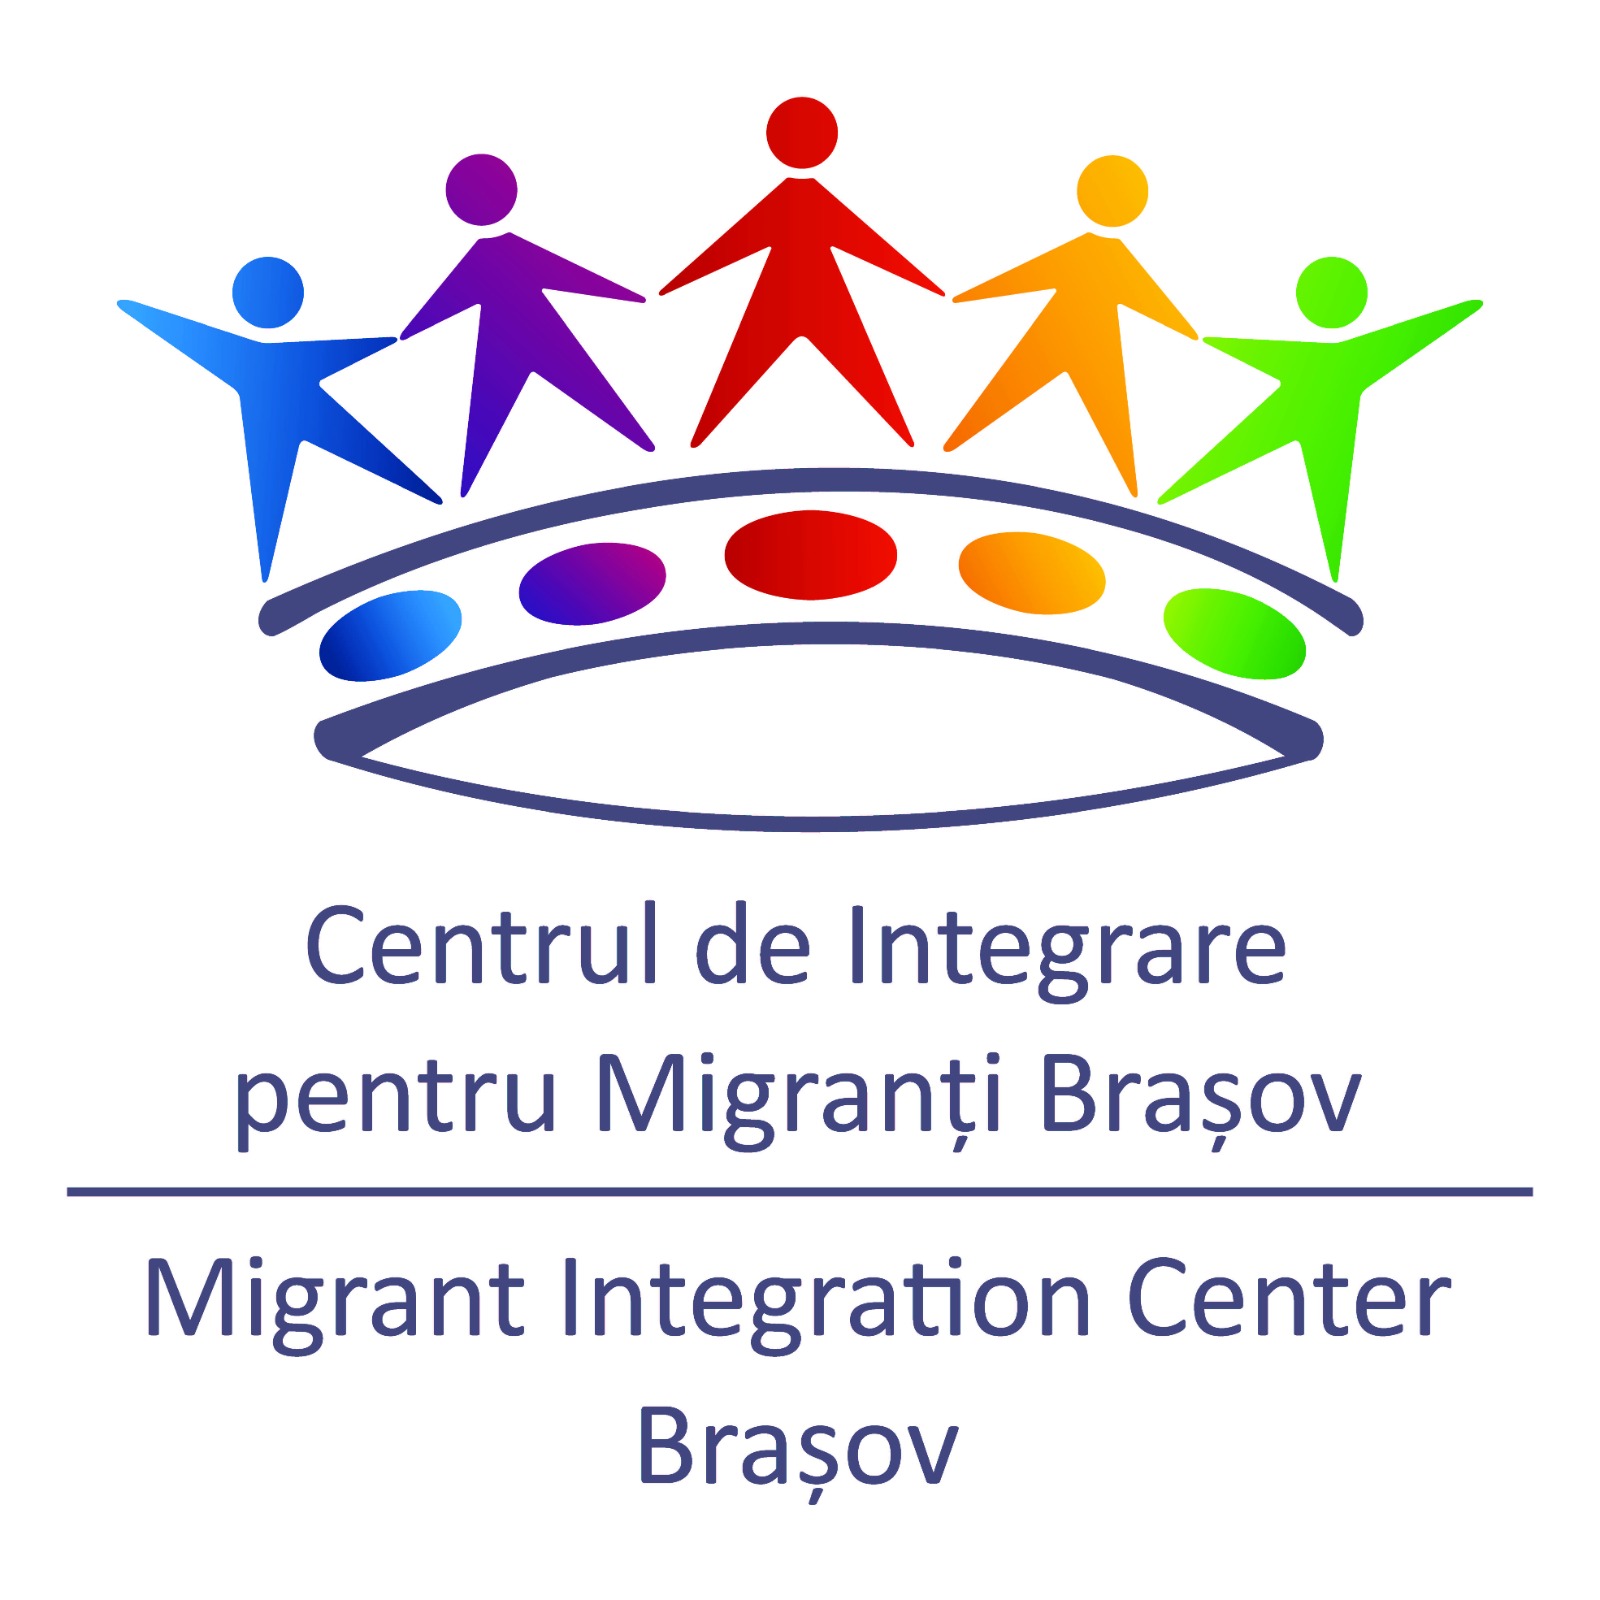 Centrul de Integrare pentru Migranti Brasov